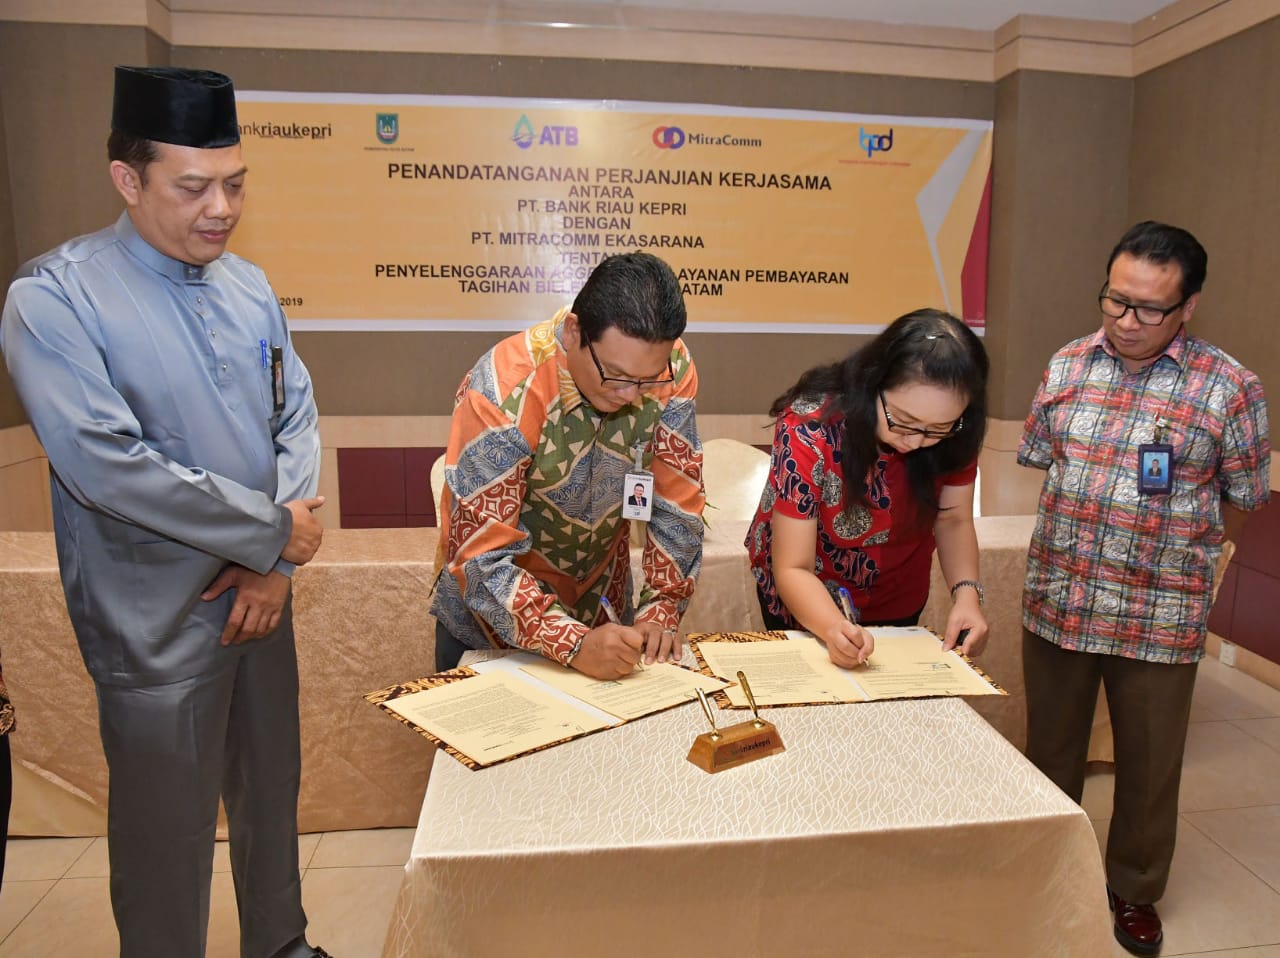 Bank Riau Kepri Siap Layani Pembayaran Tagihan ATB di Kota Batam